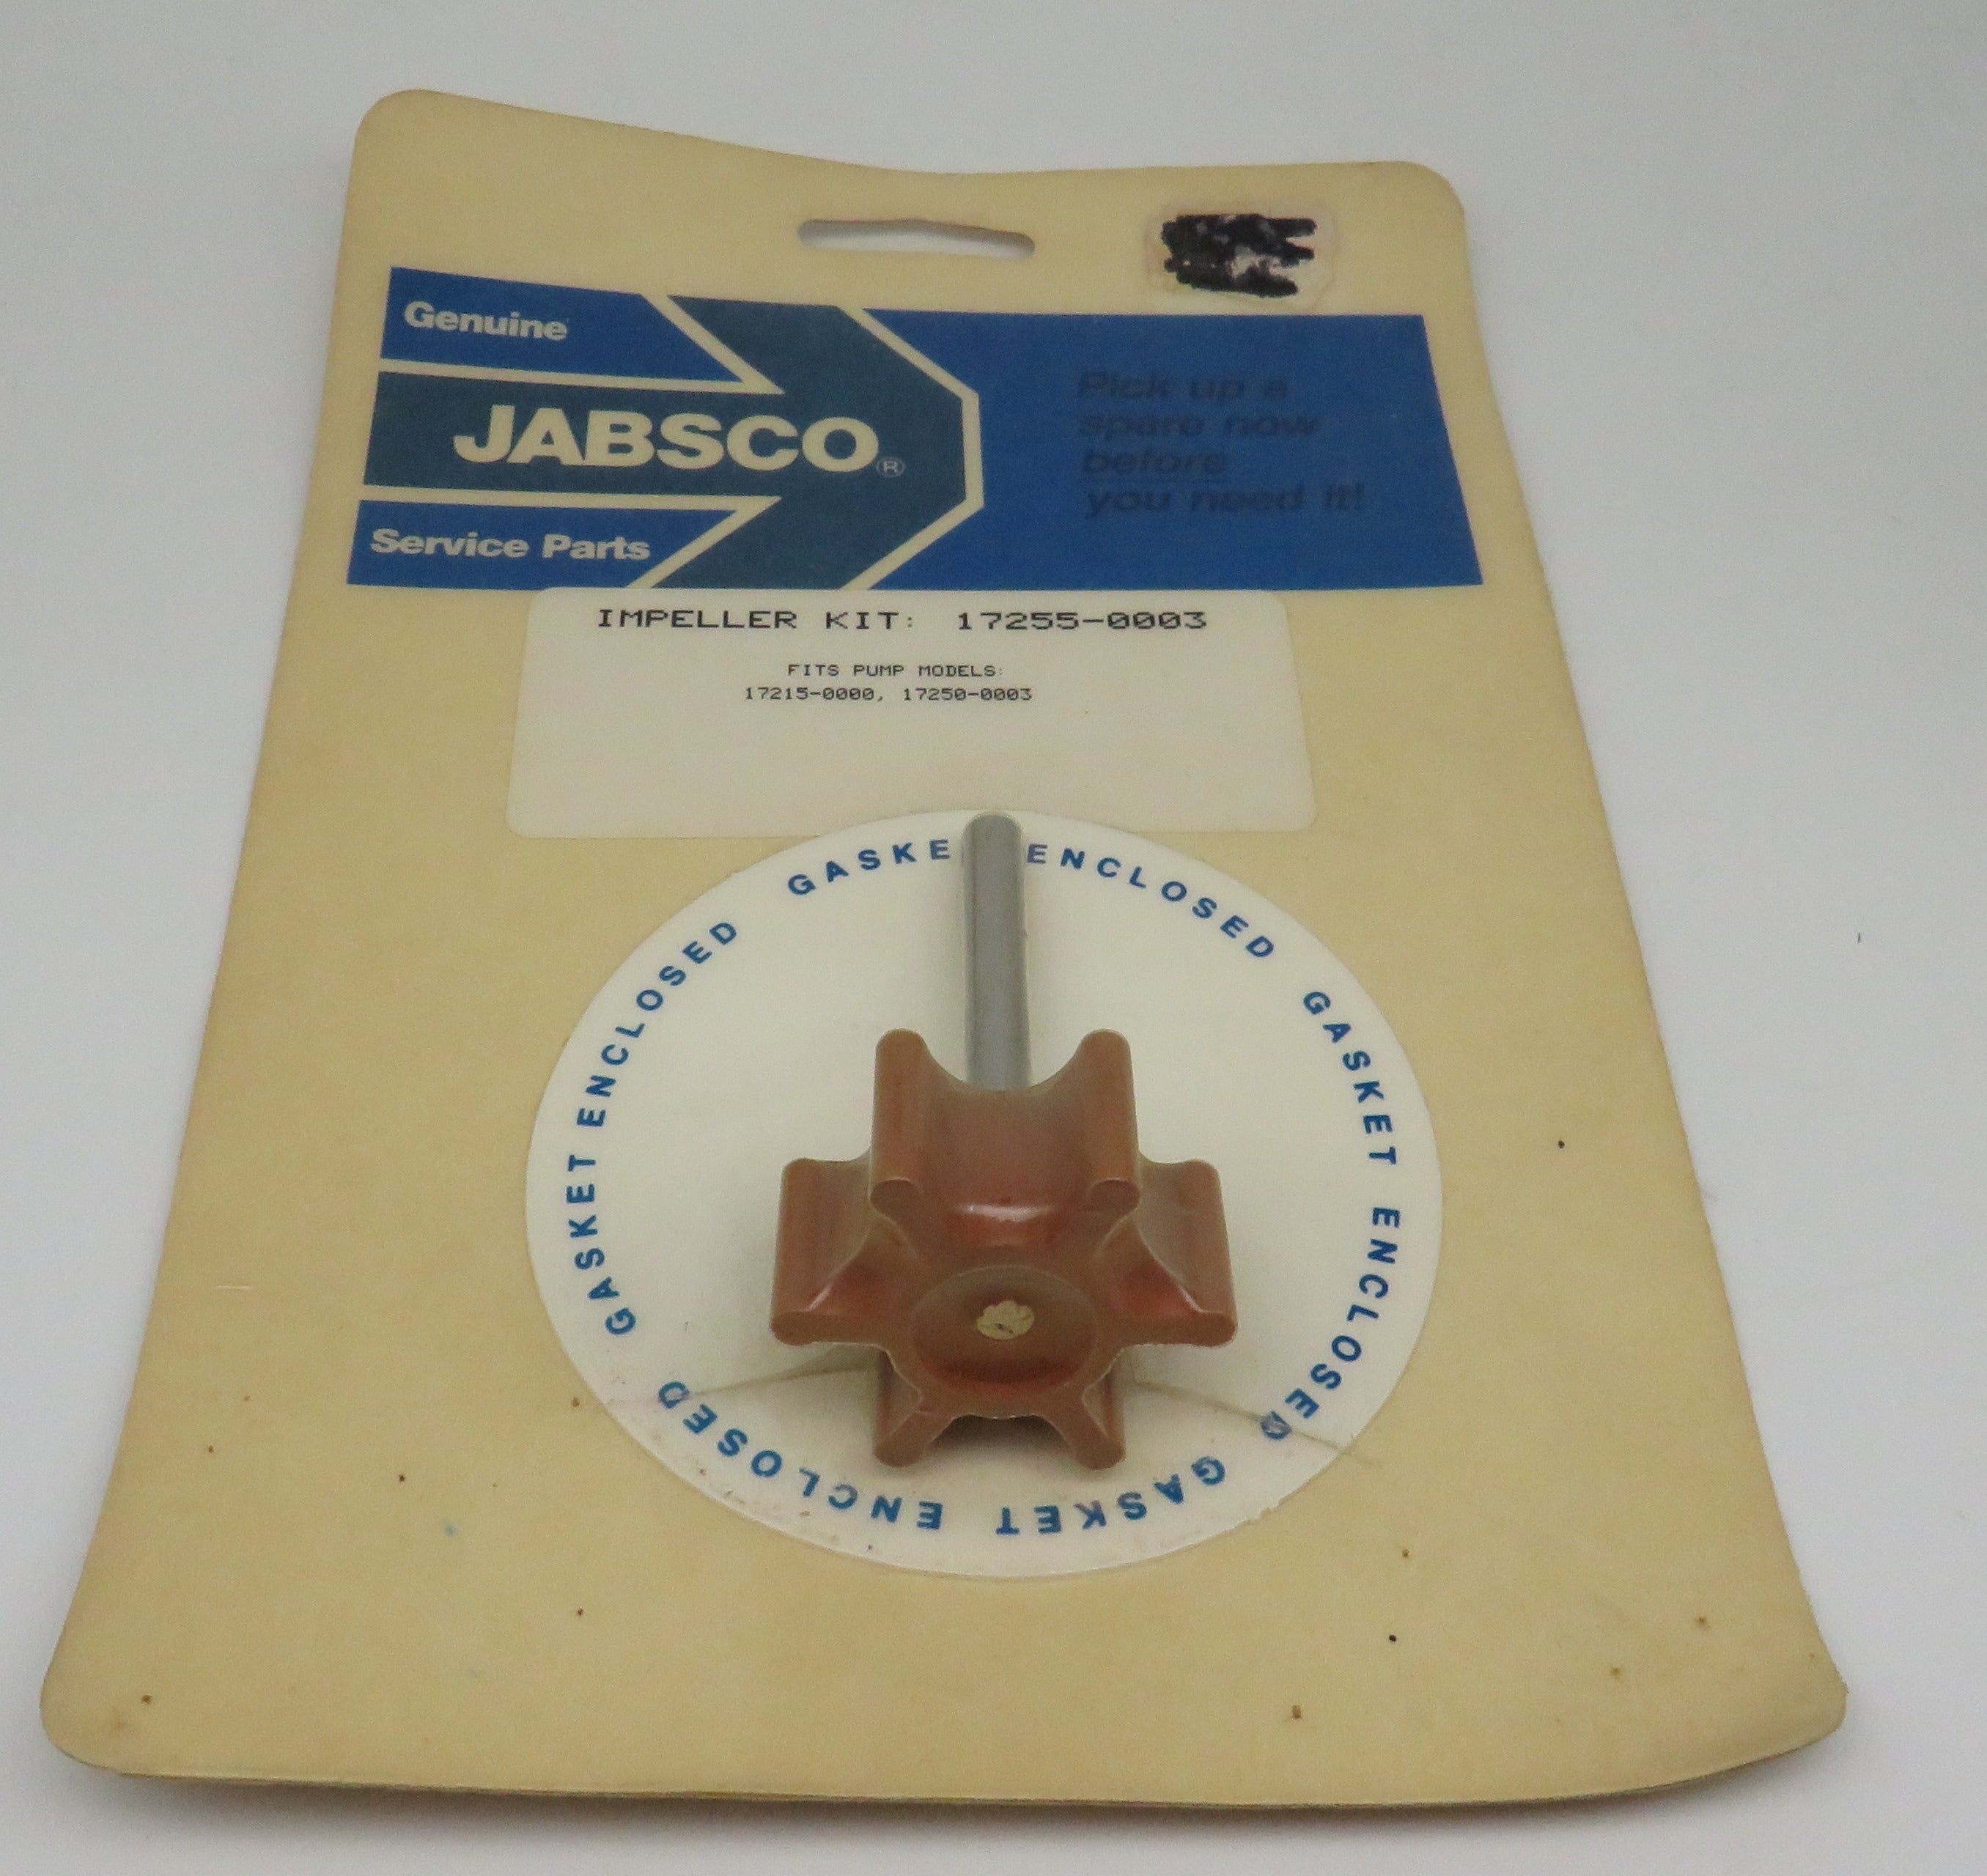 17255-0003 Jabsco Impeller Kit